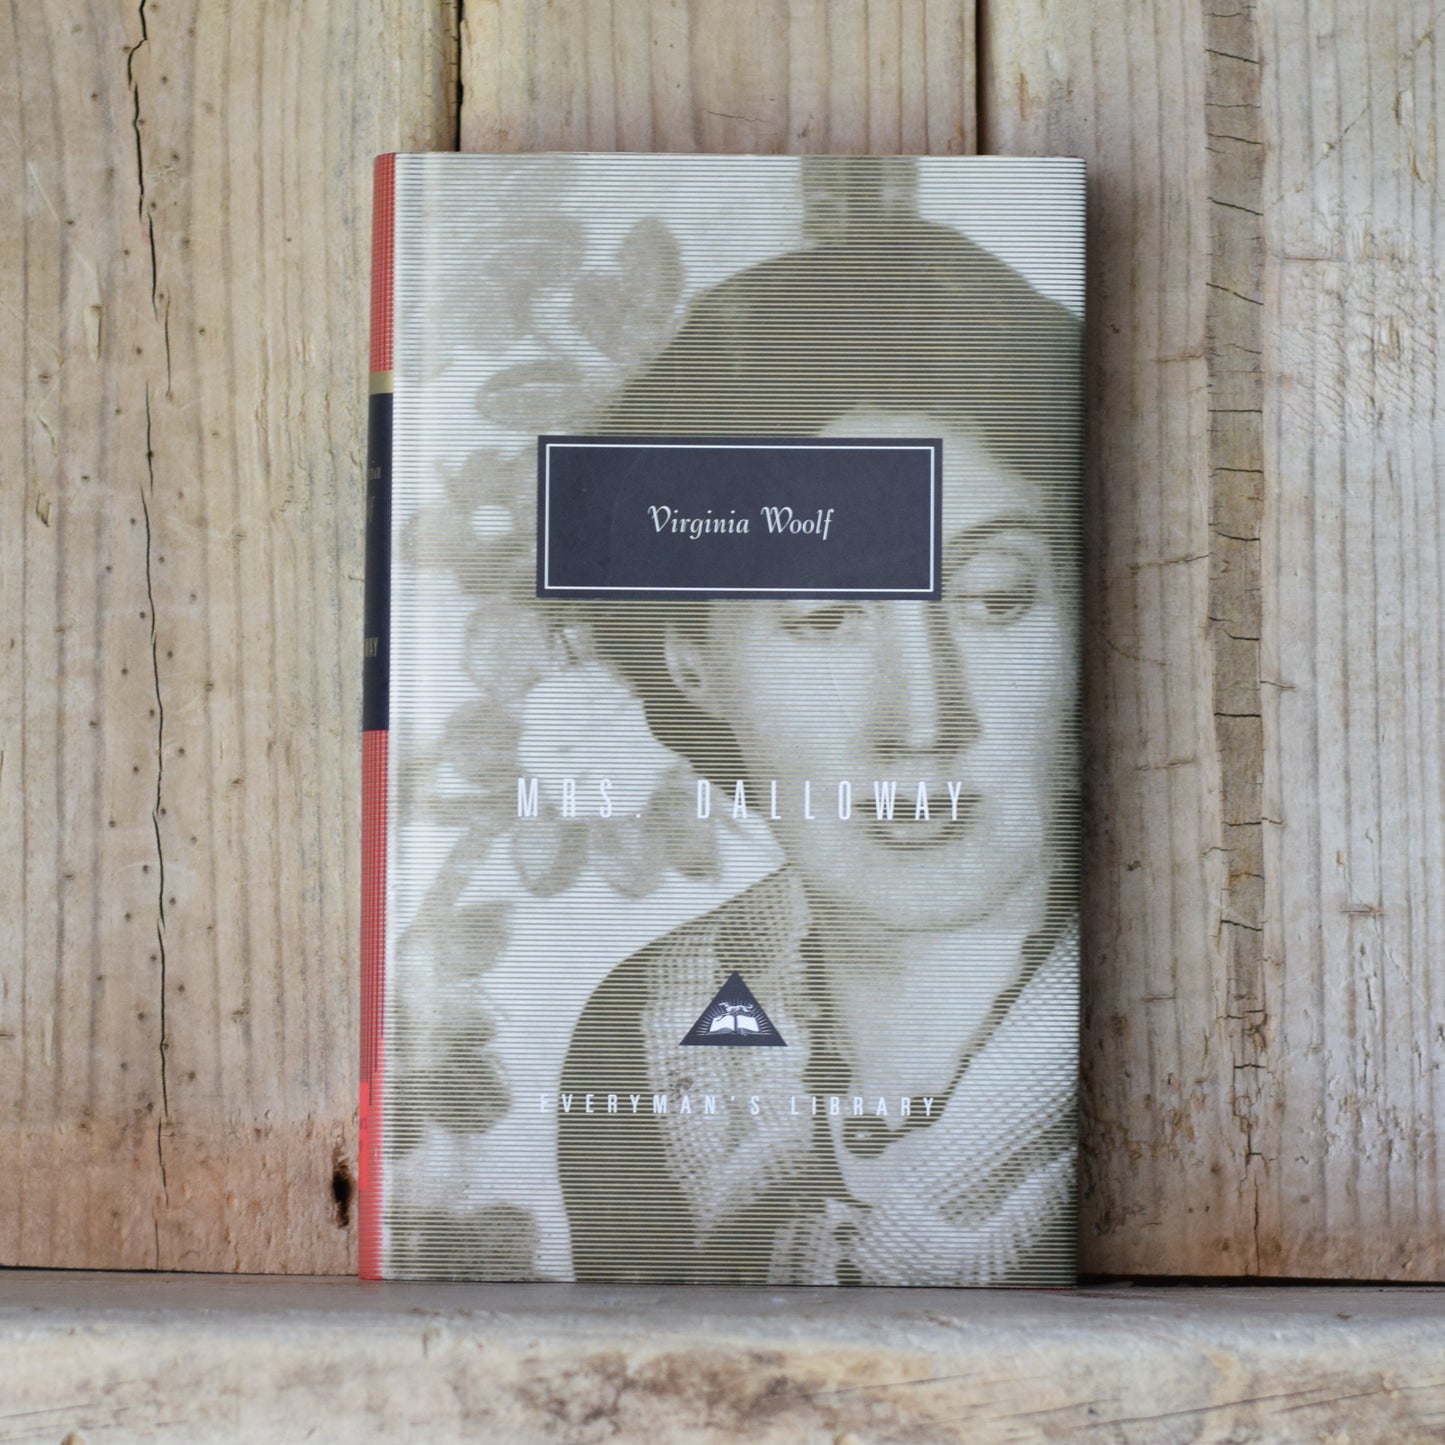 Vintage Fiction Hardback: Virginia Woolf - Mrs Dalloway